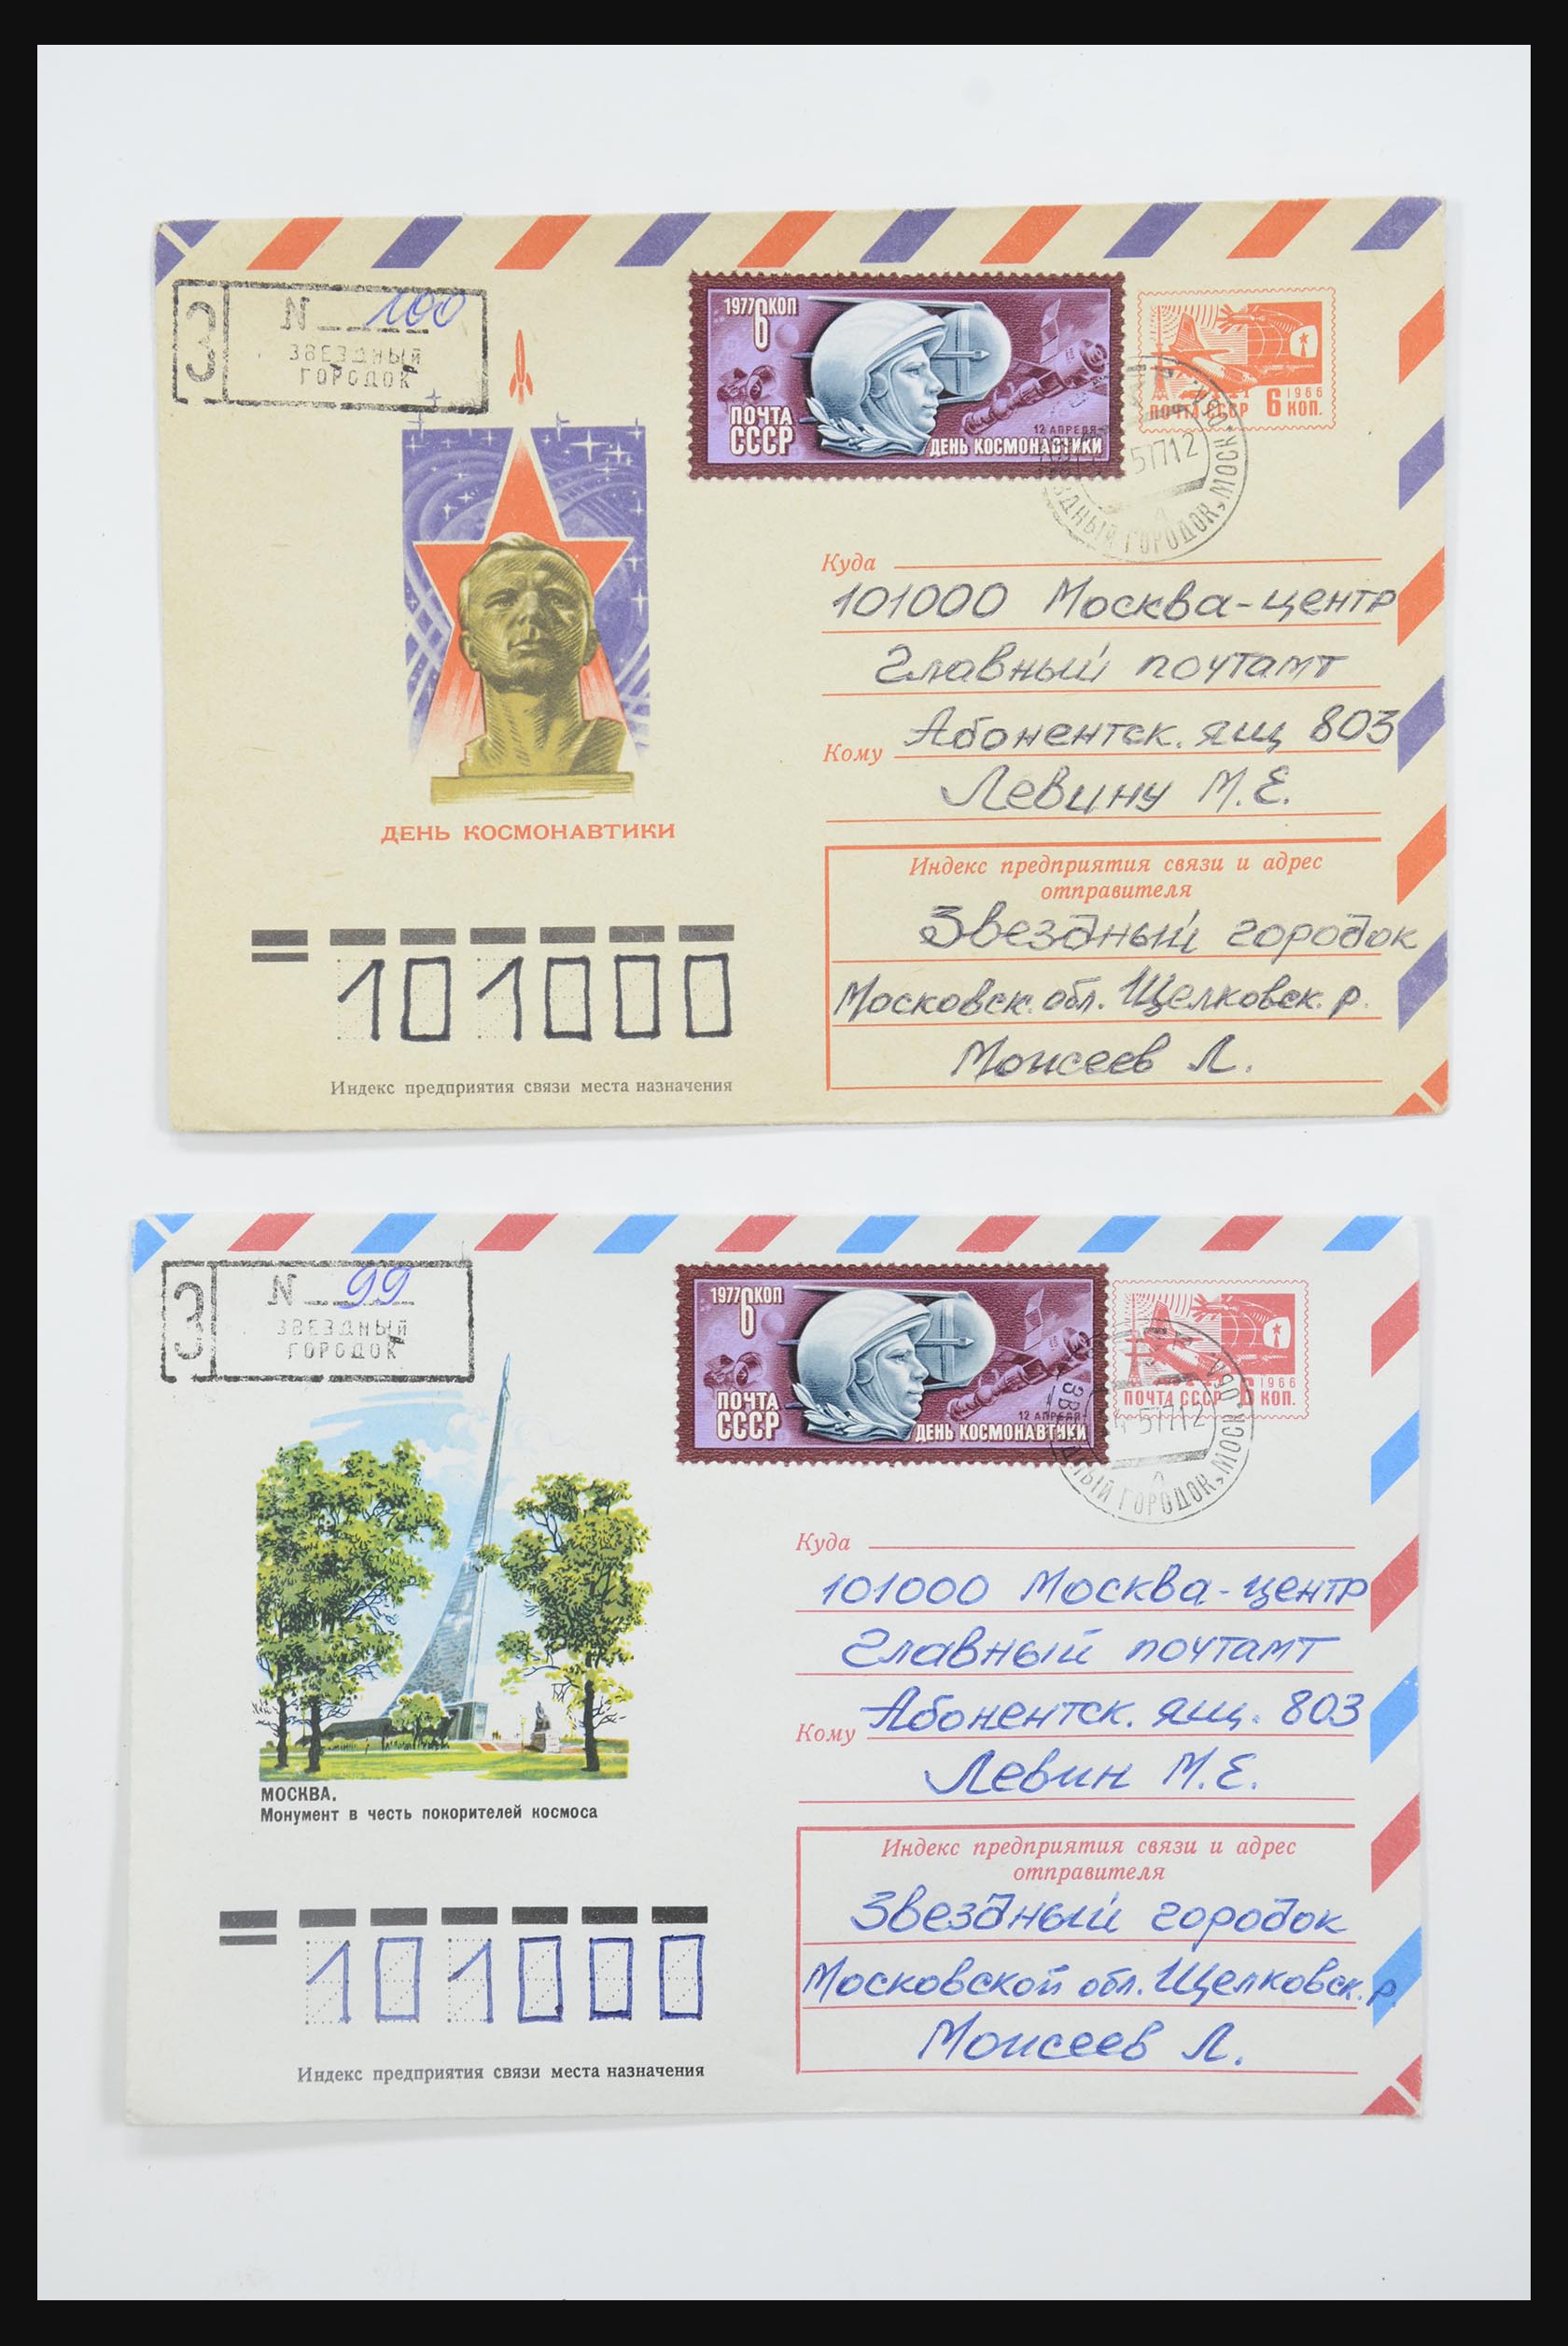 31605 0024 - 31605 Rusland postwaardestukken jaren 50-60.